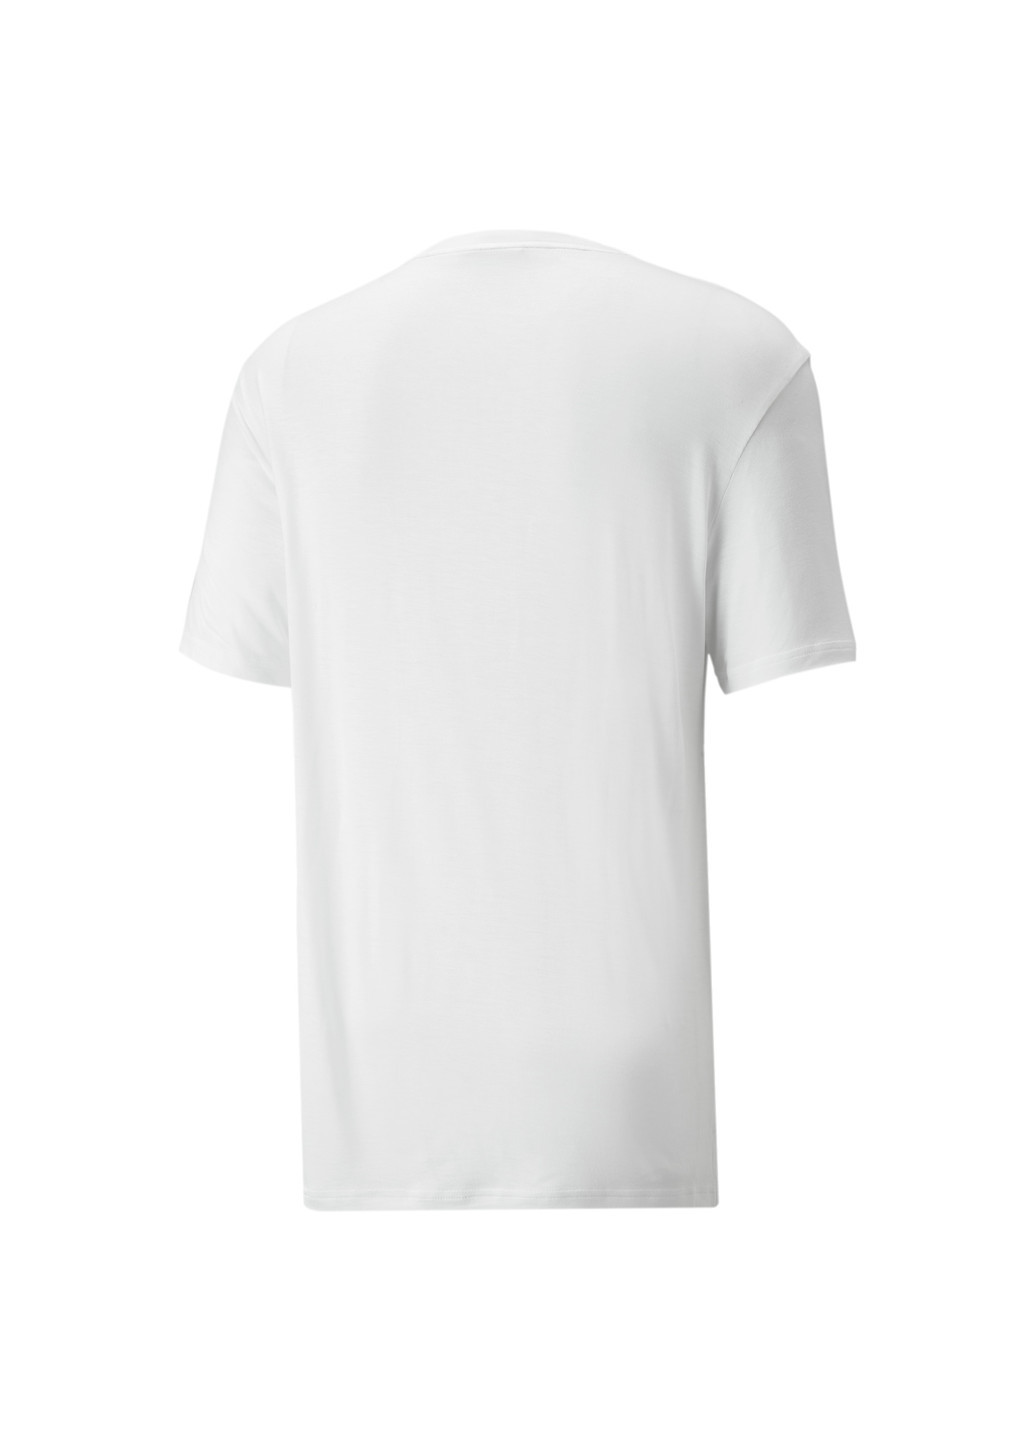 Белая демисезонная футболка classics splitside men's tee Puma